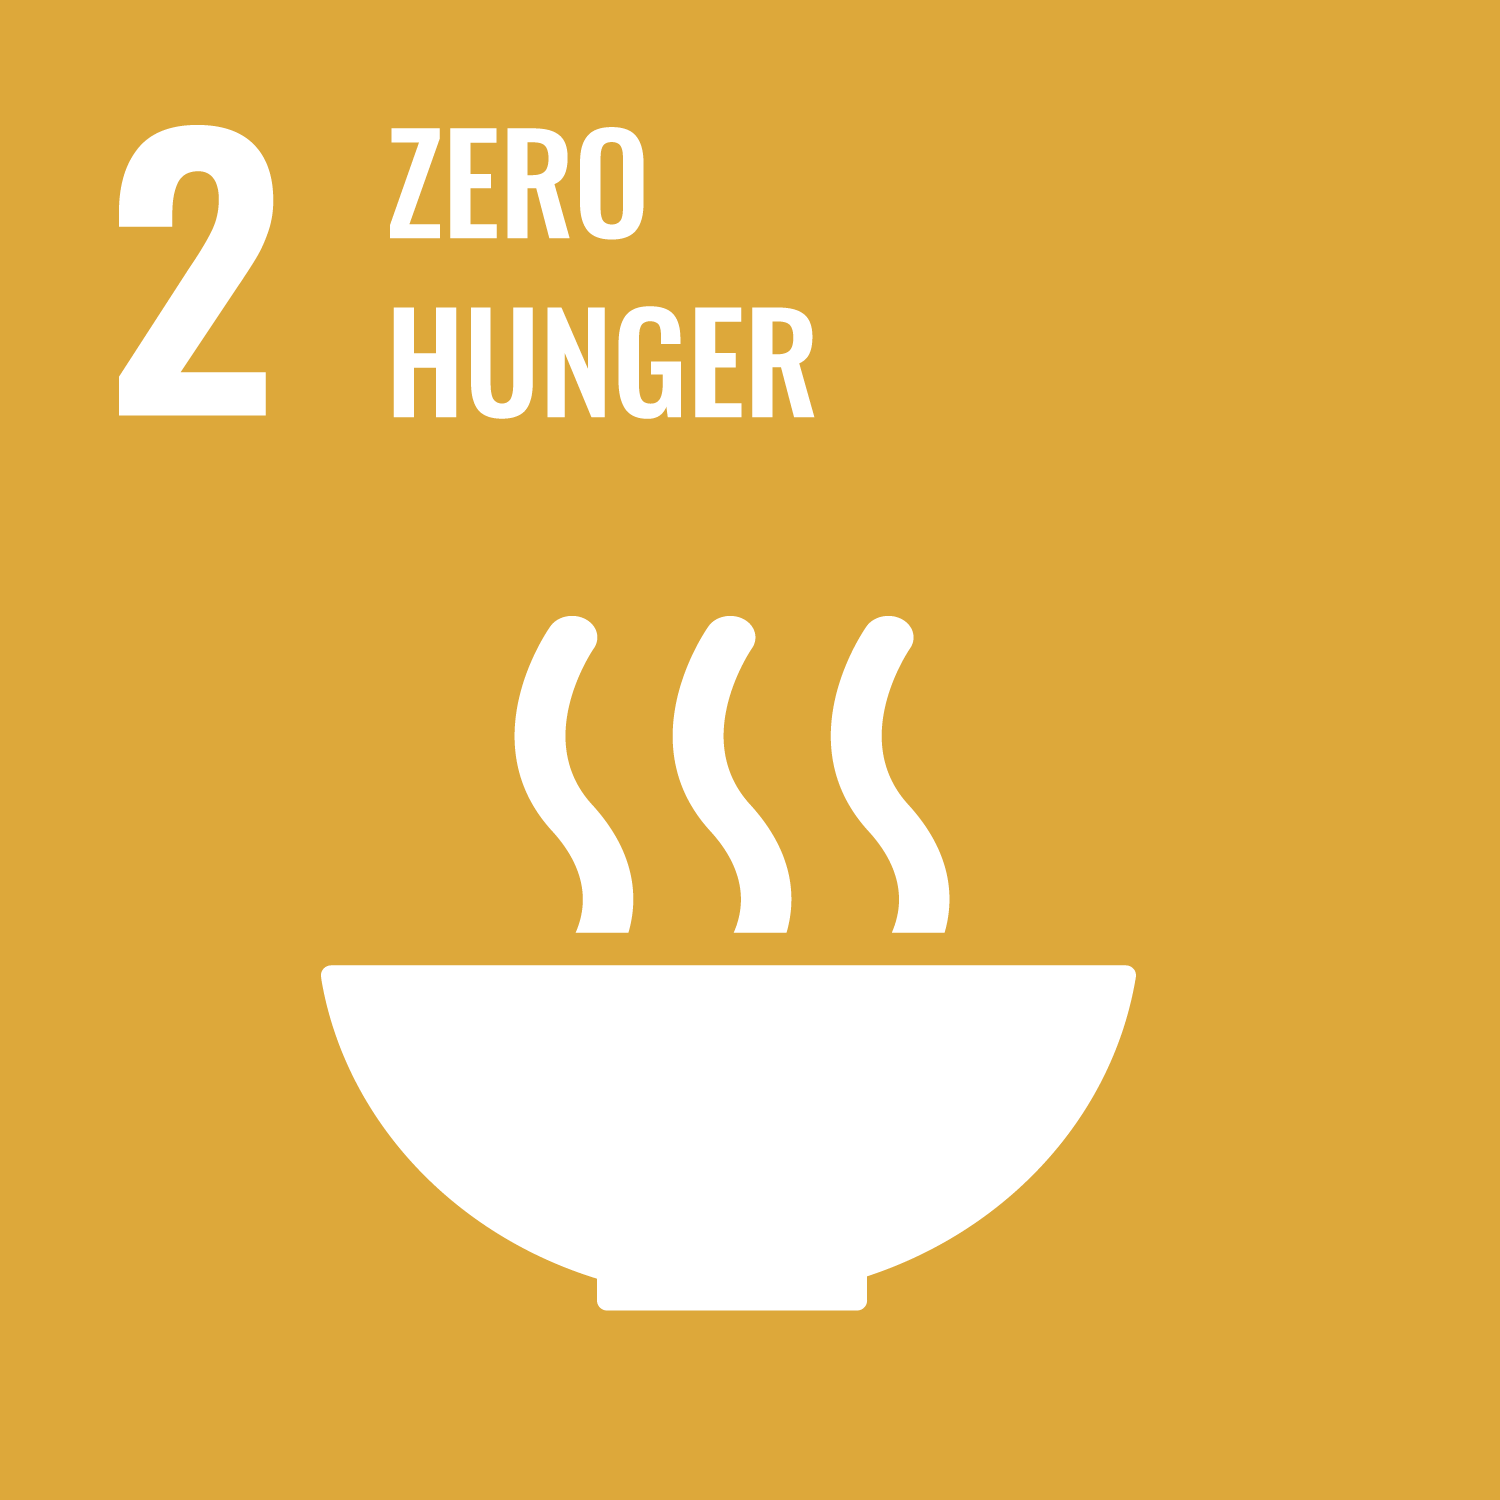 Sustainable Development Goal: SDG 2 "Zero Hunger"